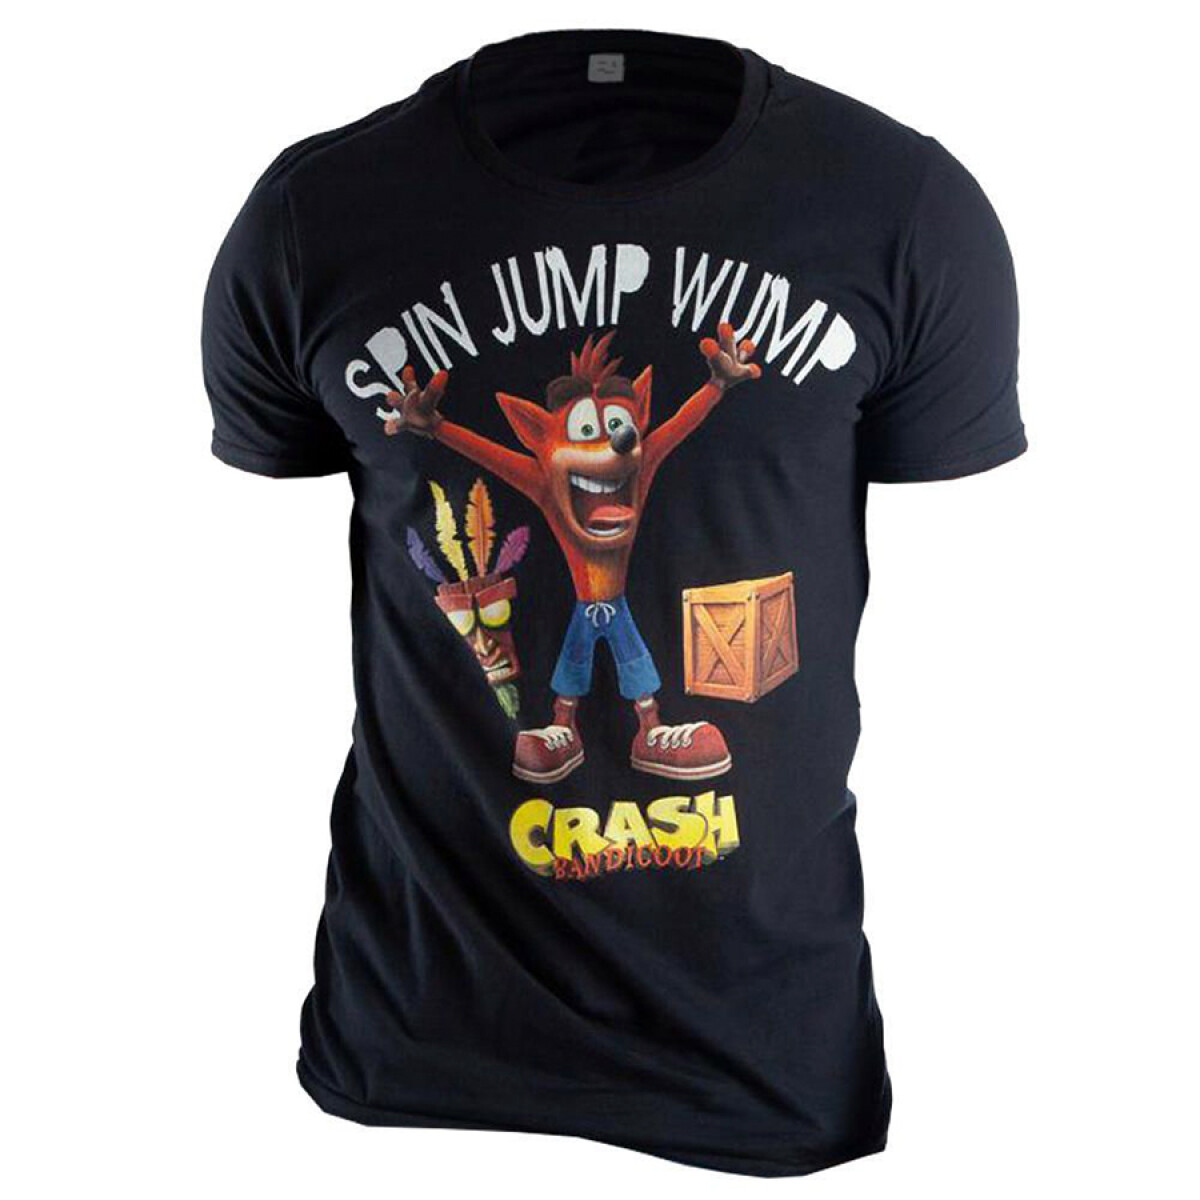 Remera Crash Bandicoot Spin Jump Wump 